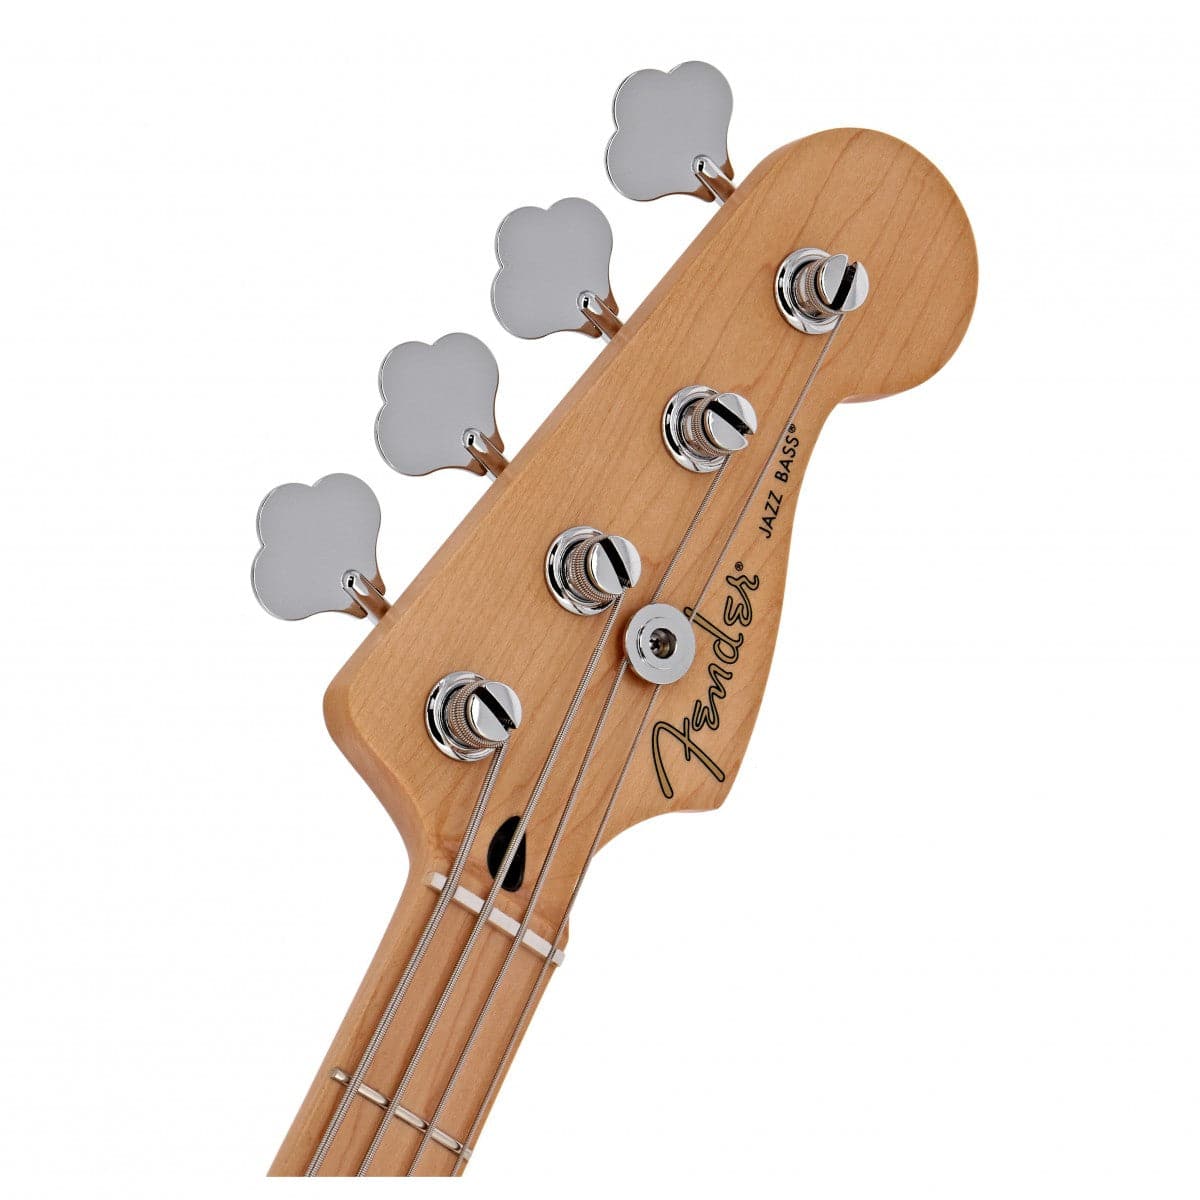 Fender Player Jazz Bass - Polar White - Maple Fingerboard